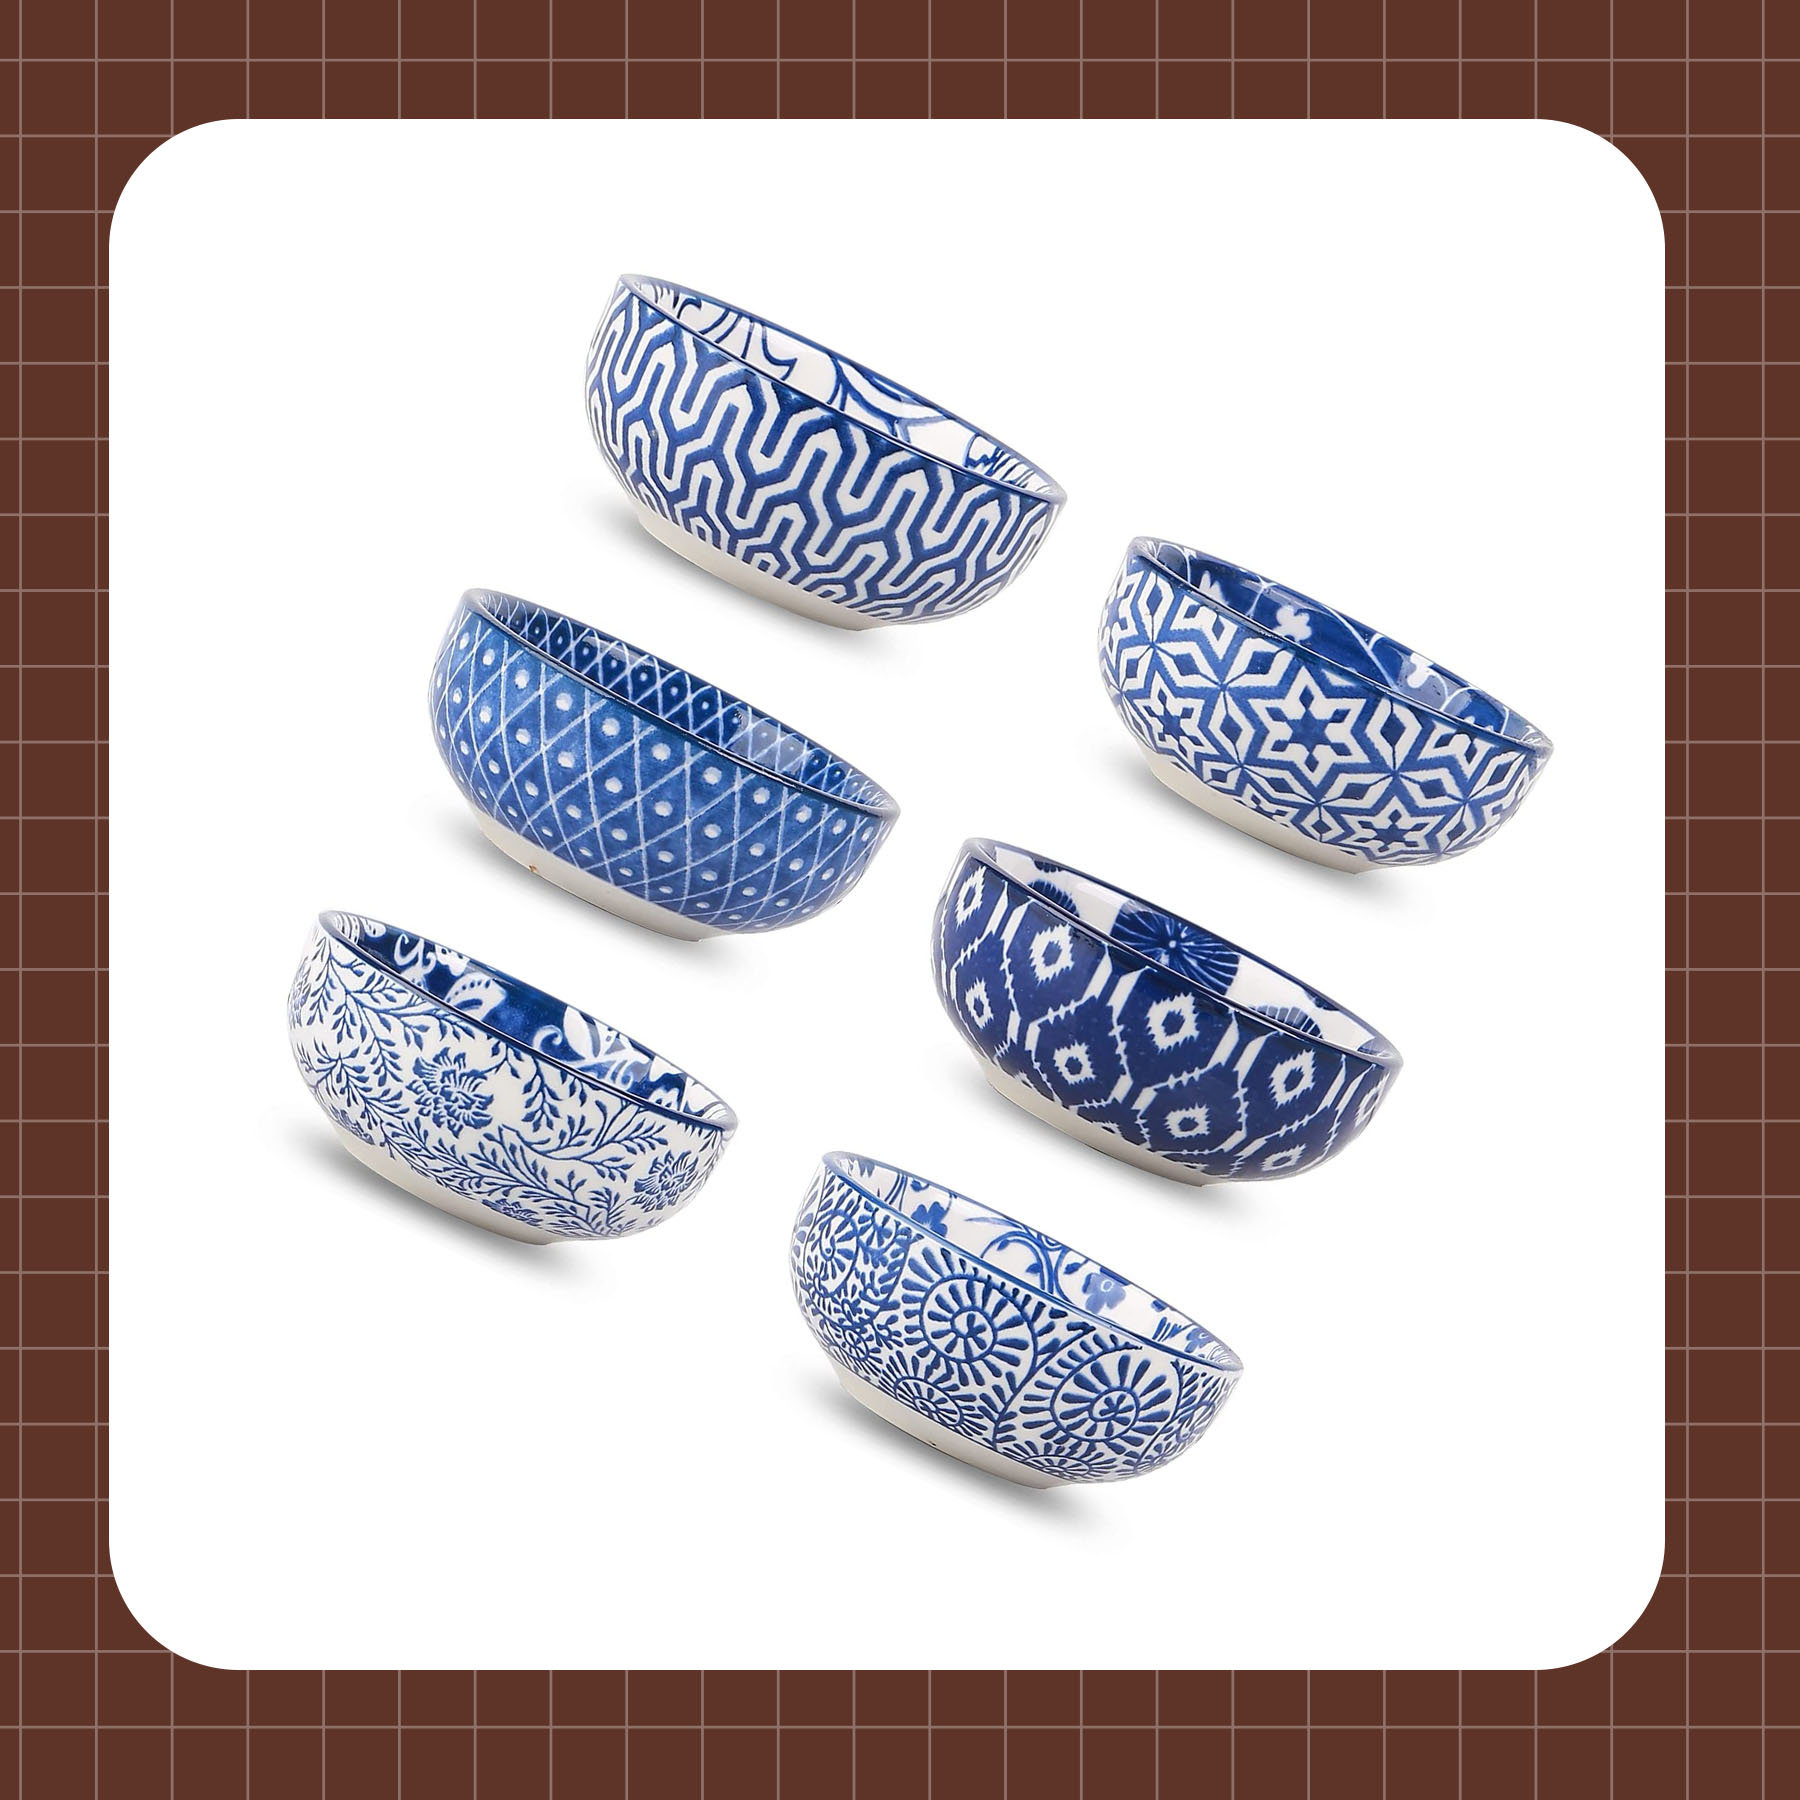 SZUAH 3 oz Ceramic Dip Bowls Set, 8 Pack White Porcelain Mini